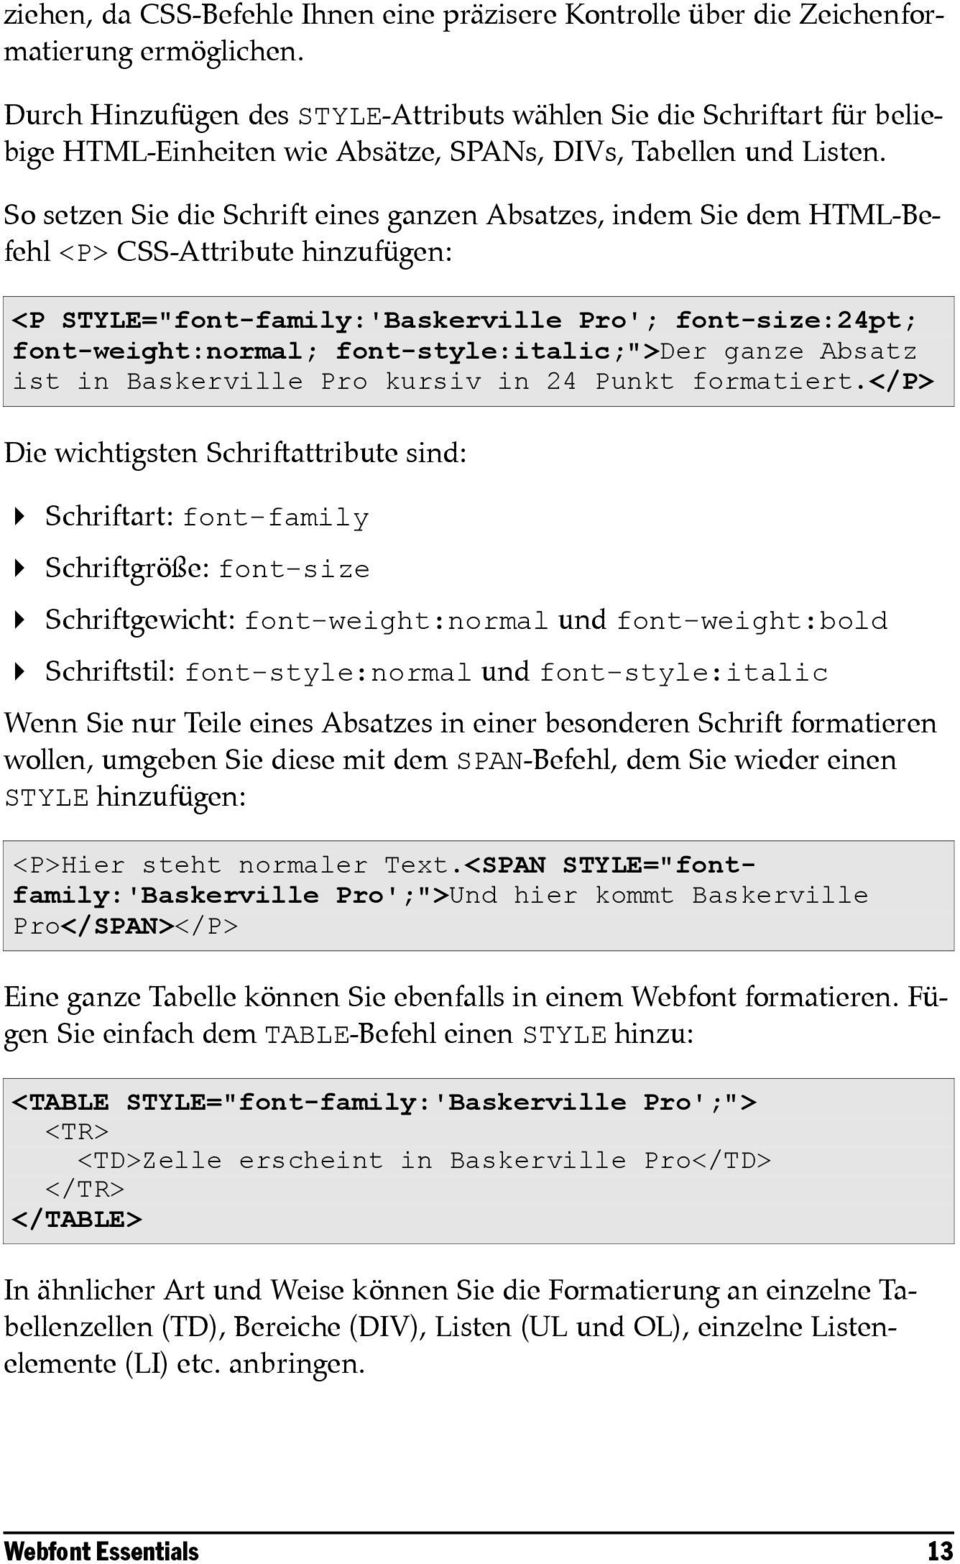 So setzen Sie die Schrift eines ganzen Absatzes, indem Sie dem HTML-Befehl <P> CSS-Attribute hinzufügen: <P STYLE="font-family:'Baskerville Pro'; font-size:24pt; font-weight:normal;